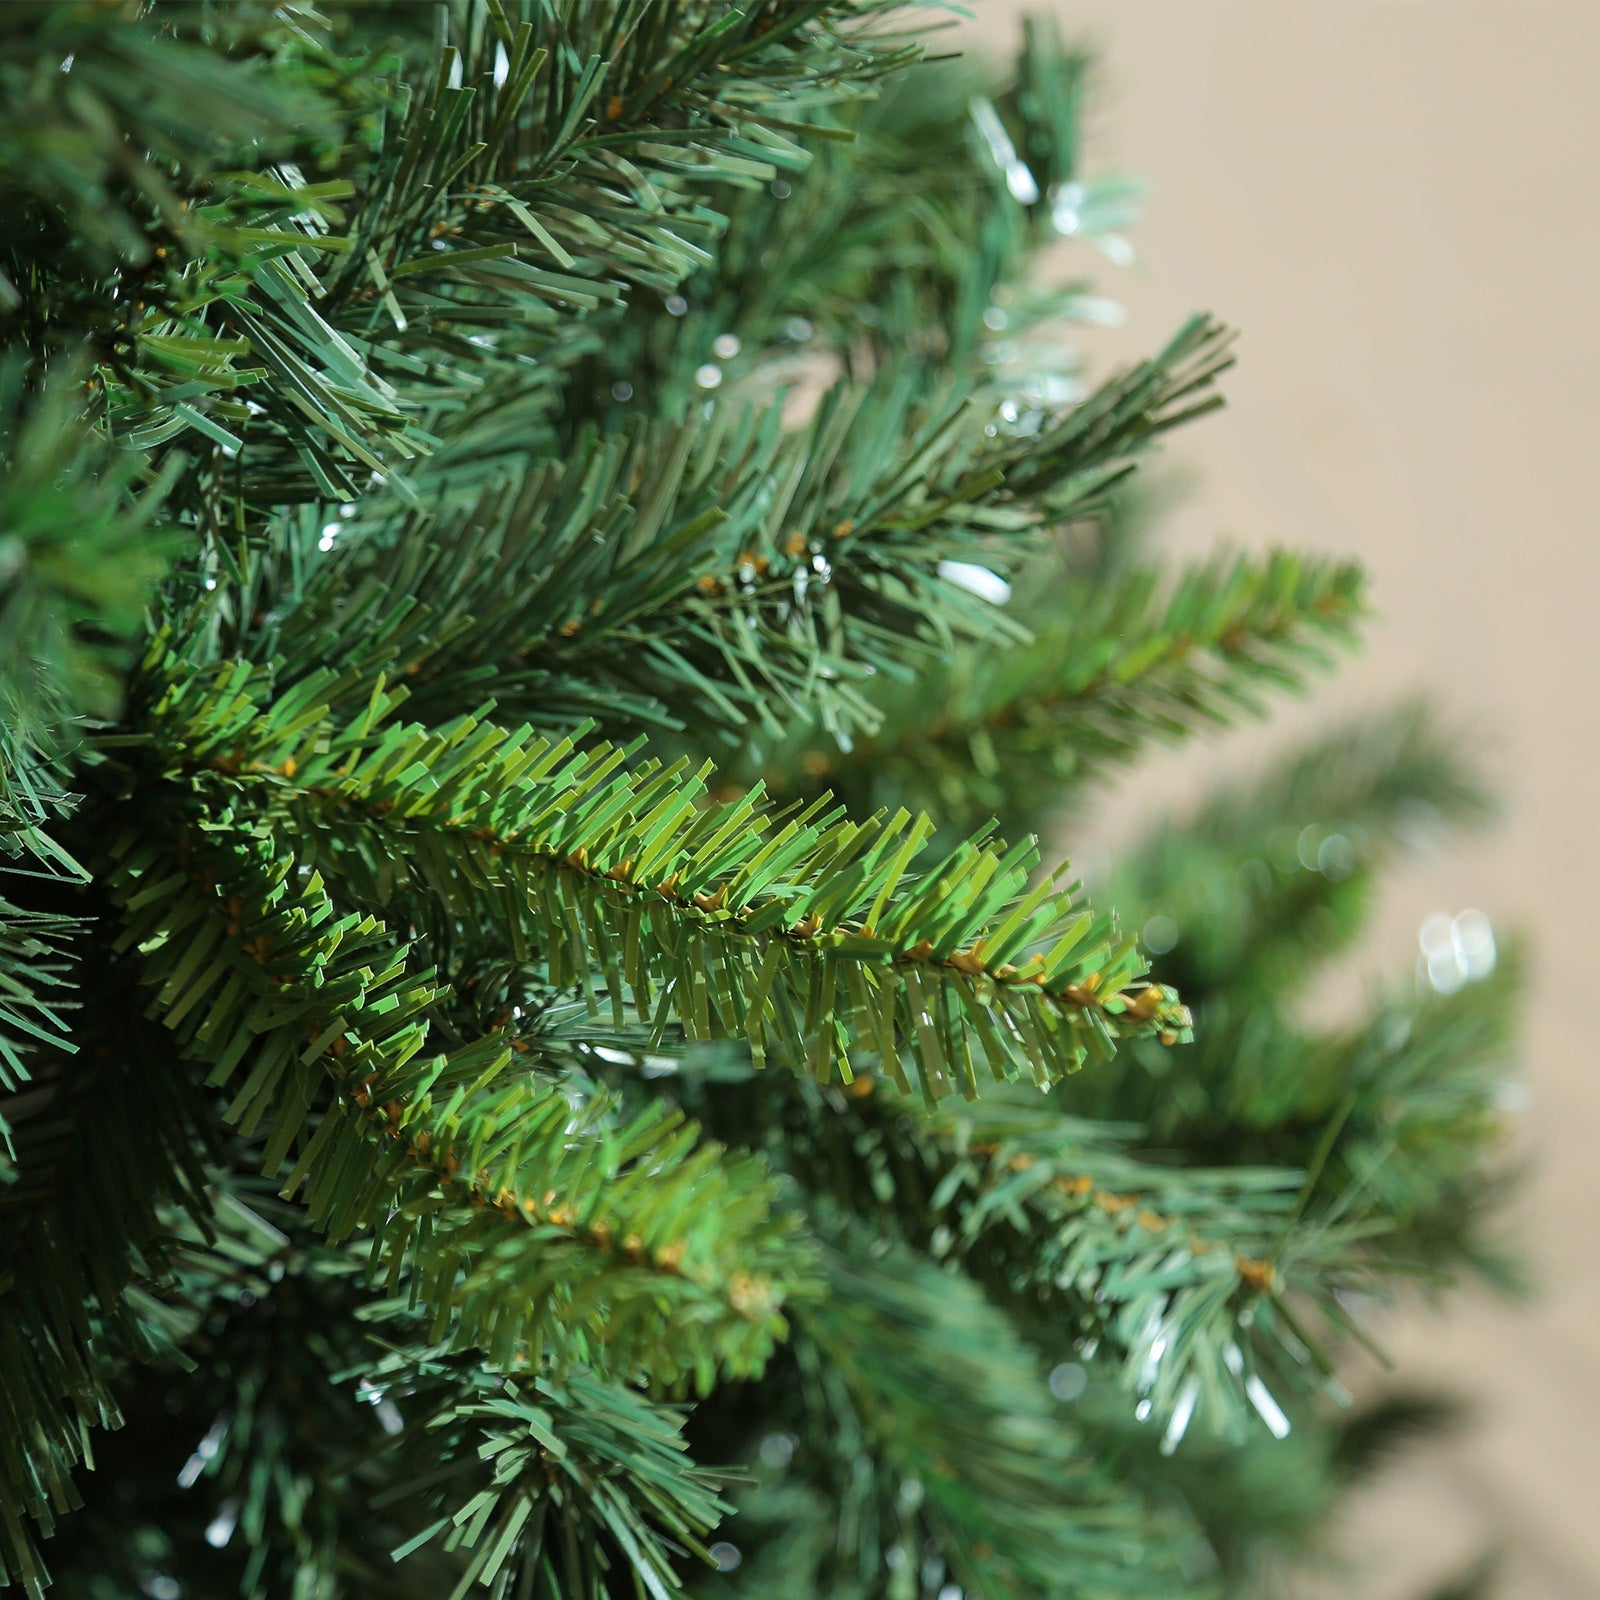 Árbol de Navidad "Cheminée" de PVC de muy alta calidad con efecto realista.